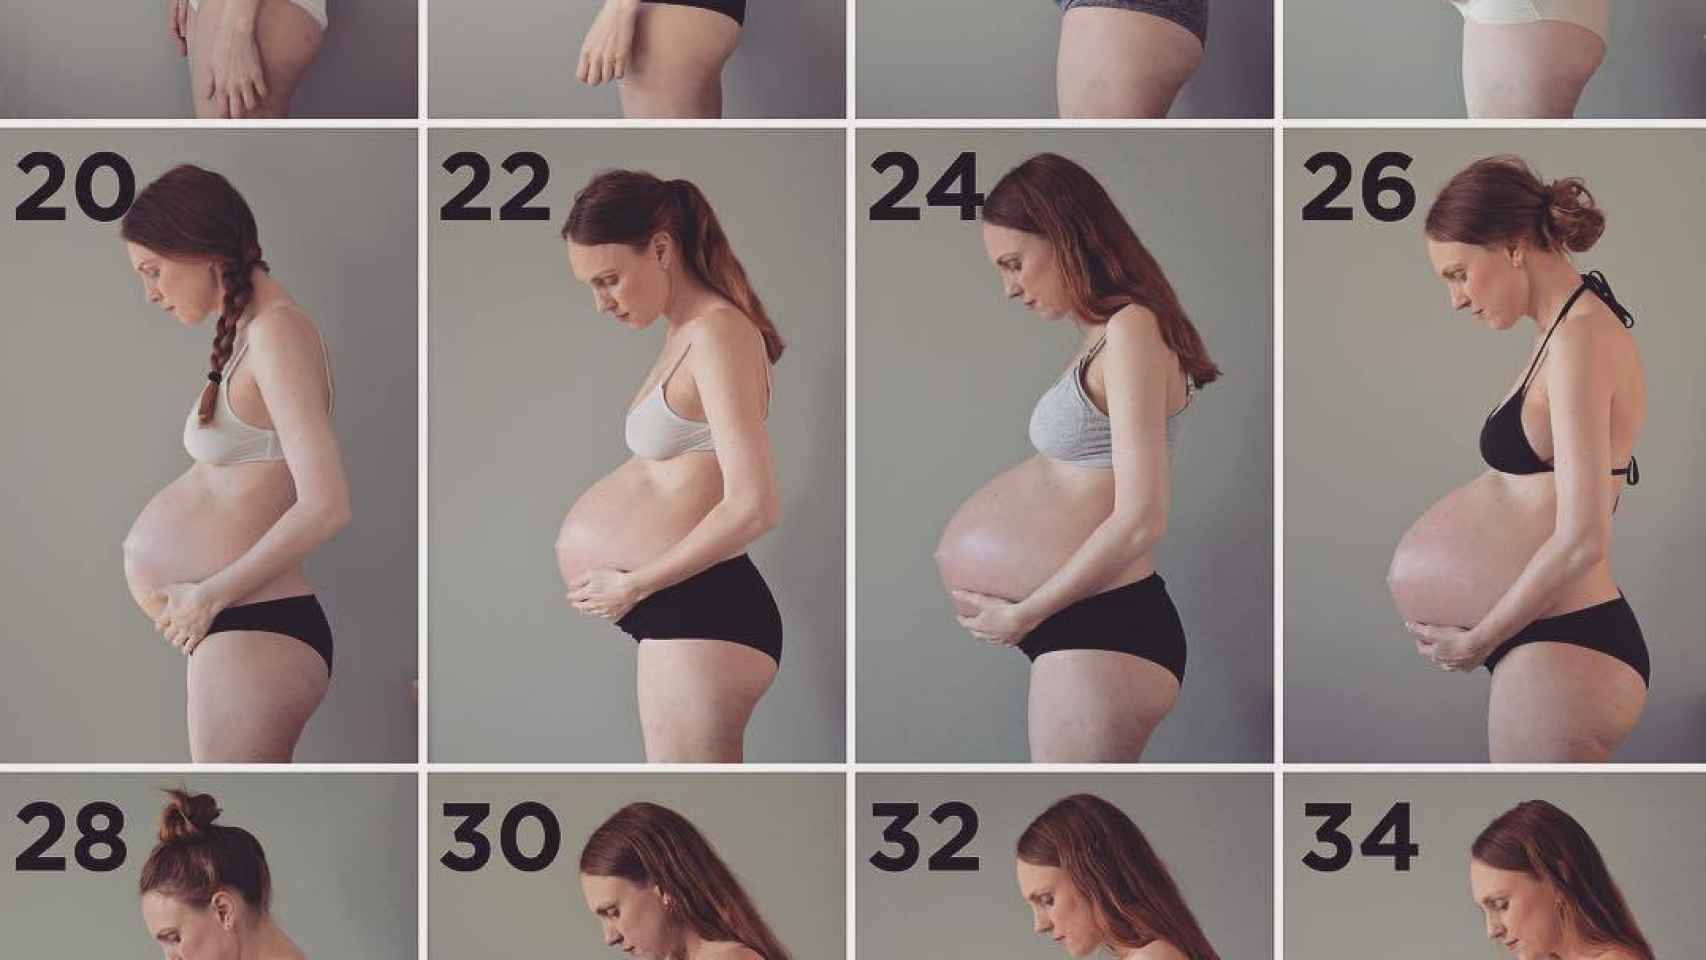 Для тех кому нравятся беременные фигурки создана эта галерея с разными девушками в положении 